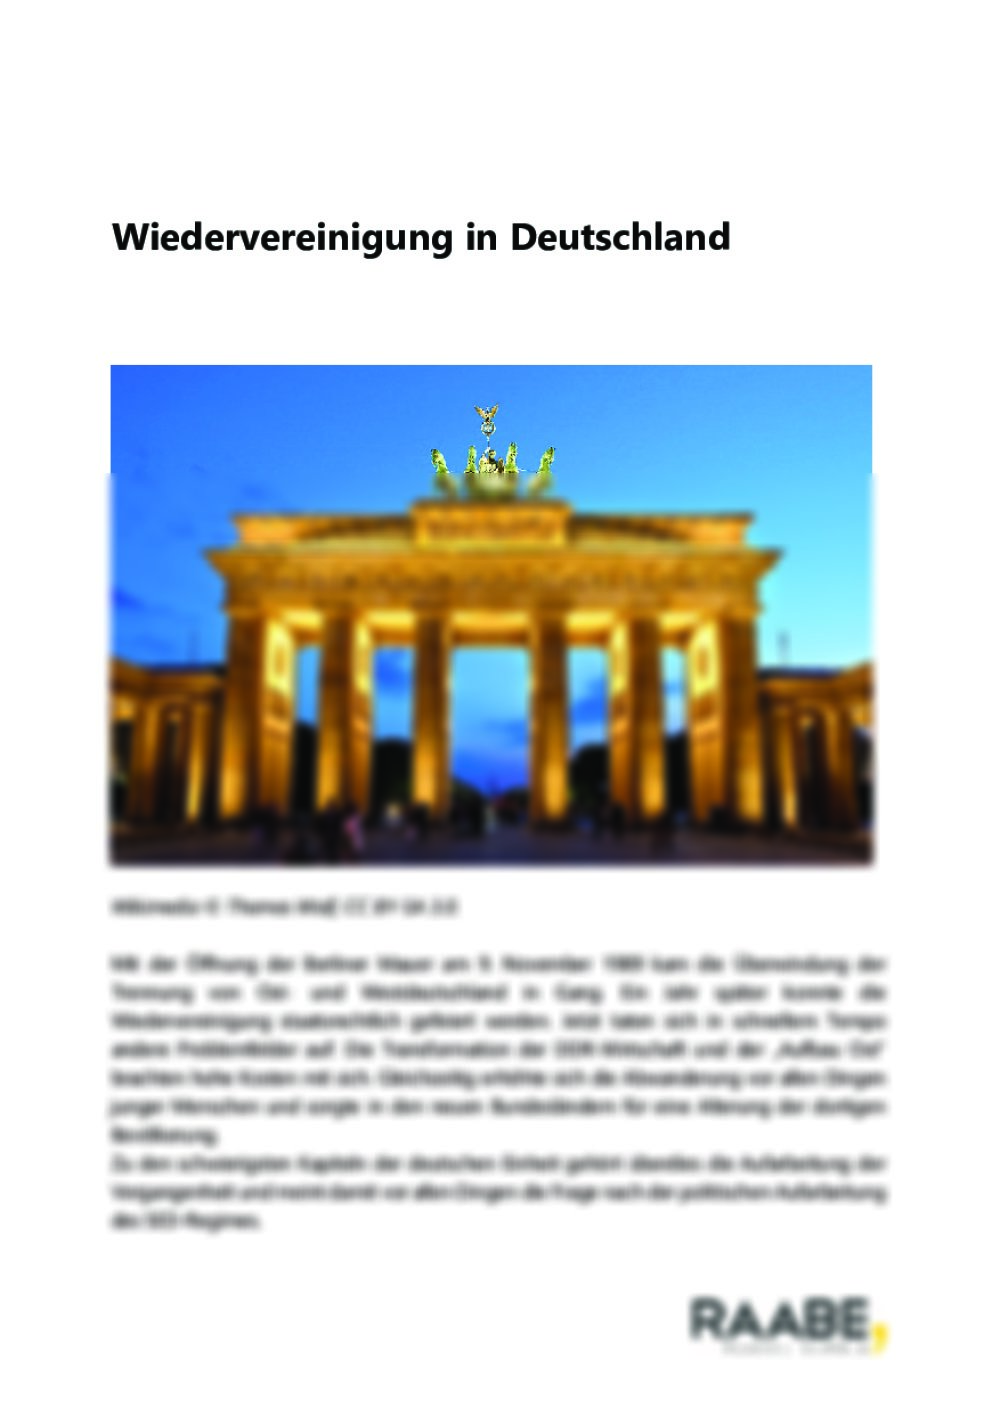 Wiedervereinigung in Deutschland - Seite 1